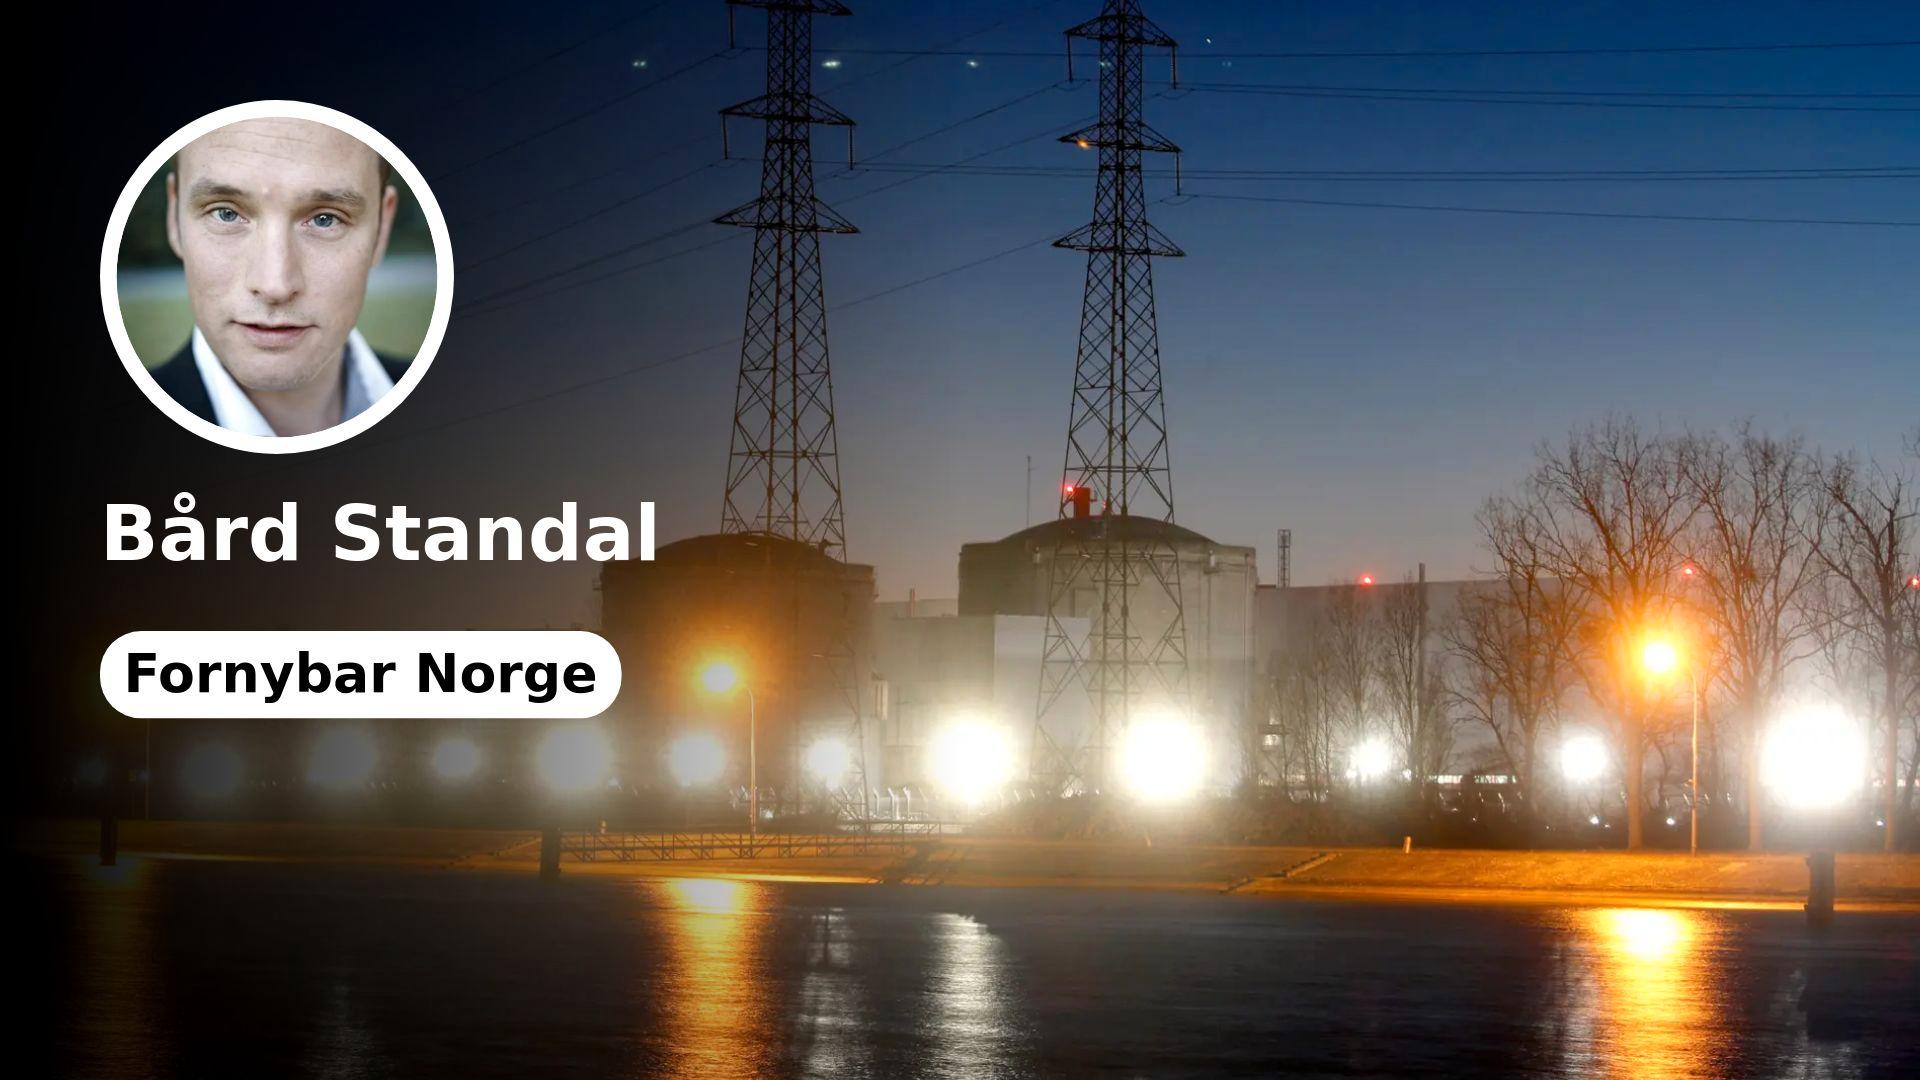 L’energia nucleare non risolverà nulla per la Norvegia a breve termine